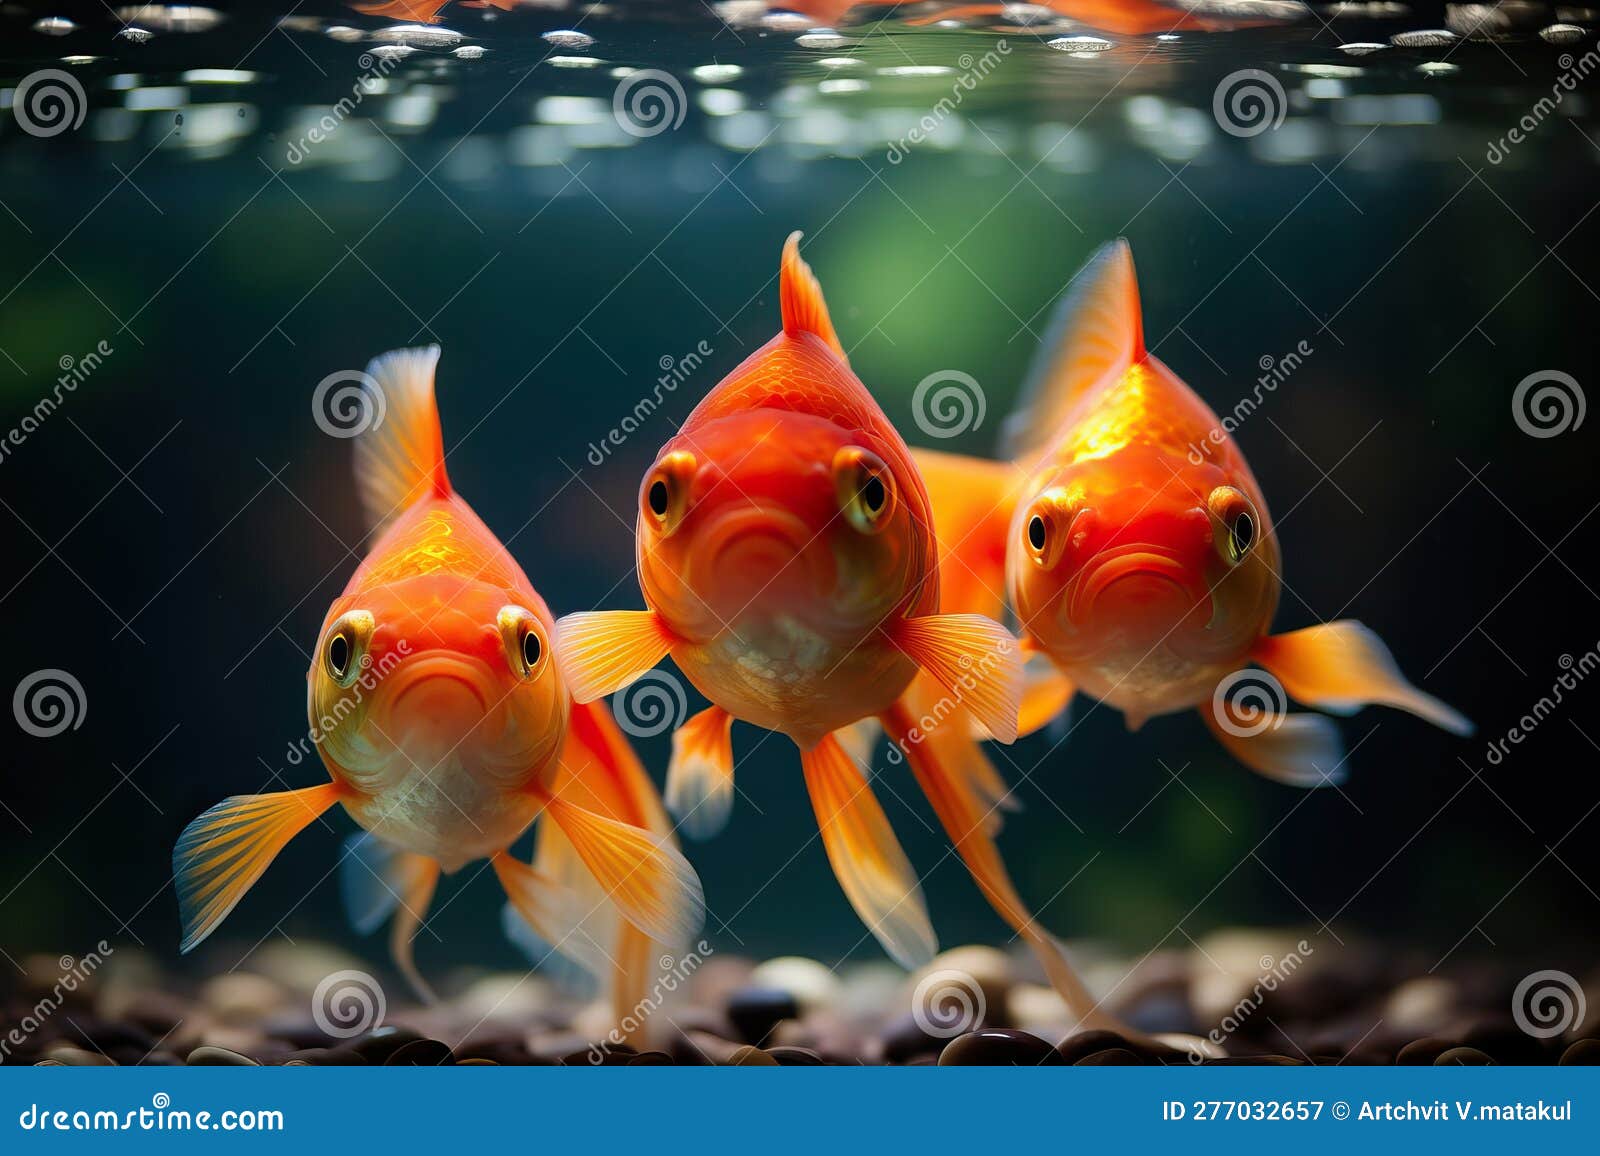 Three Goldfish in Aquarium Facing Forward Stock Illustration